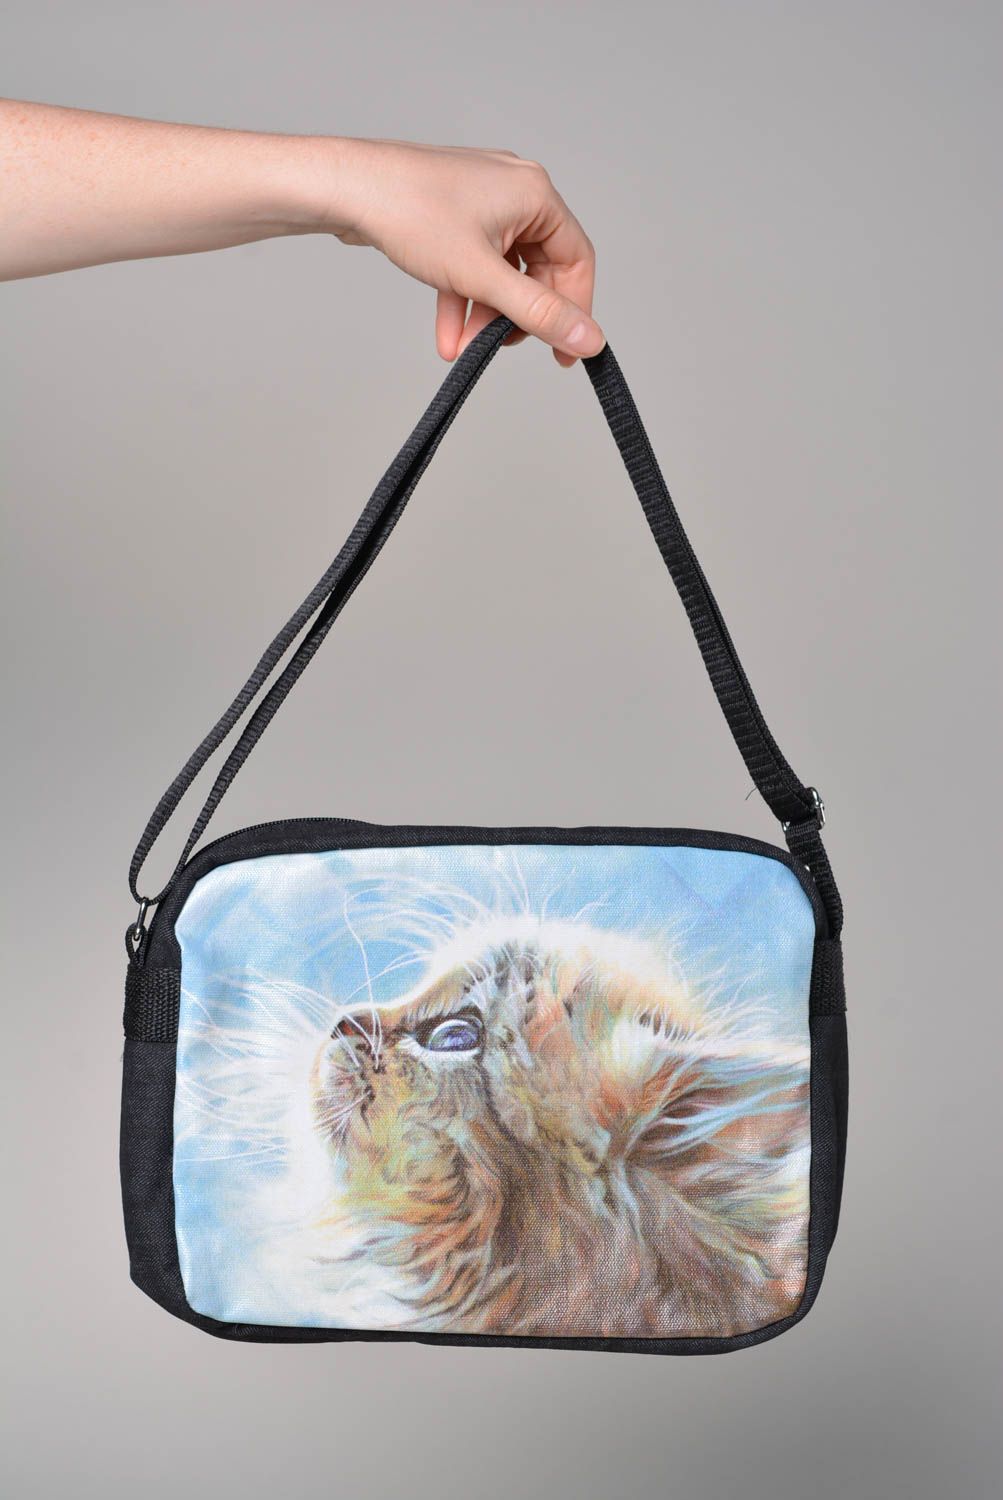 Джинсовая сумка ручной работы сумка для подростка сумка с рисунком модная сумка фото 3